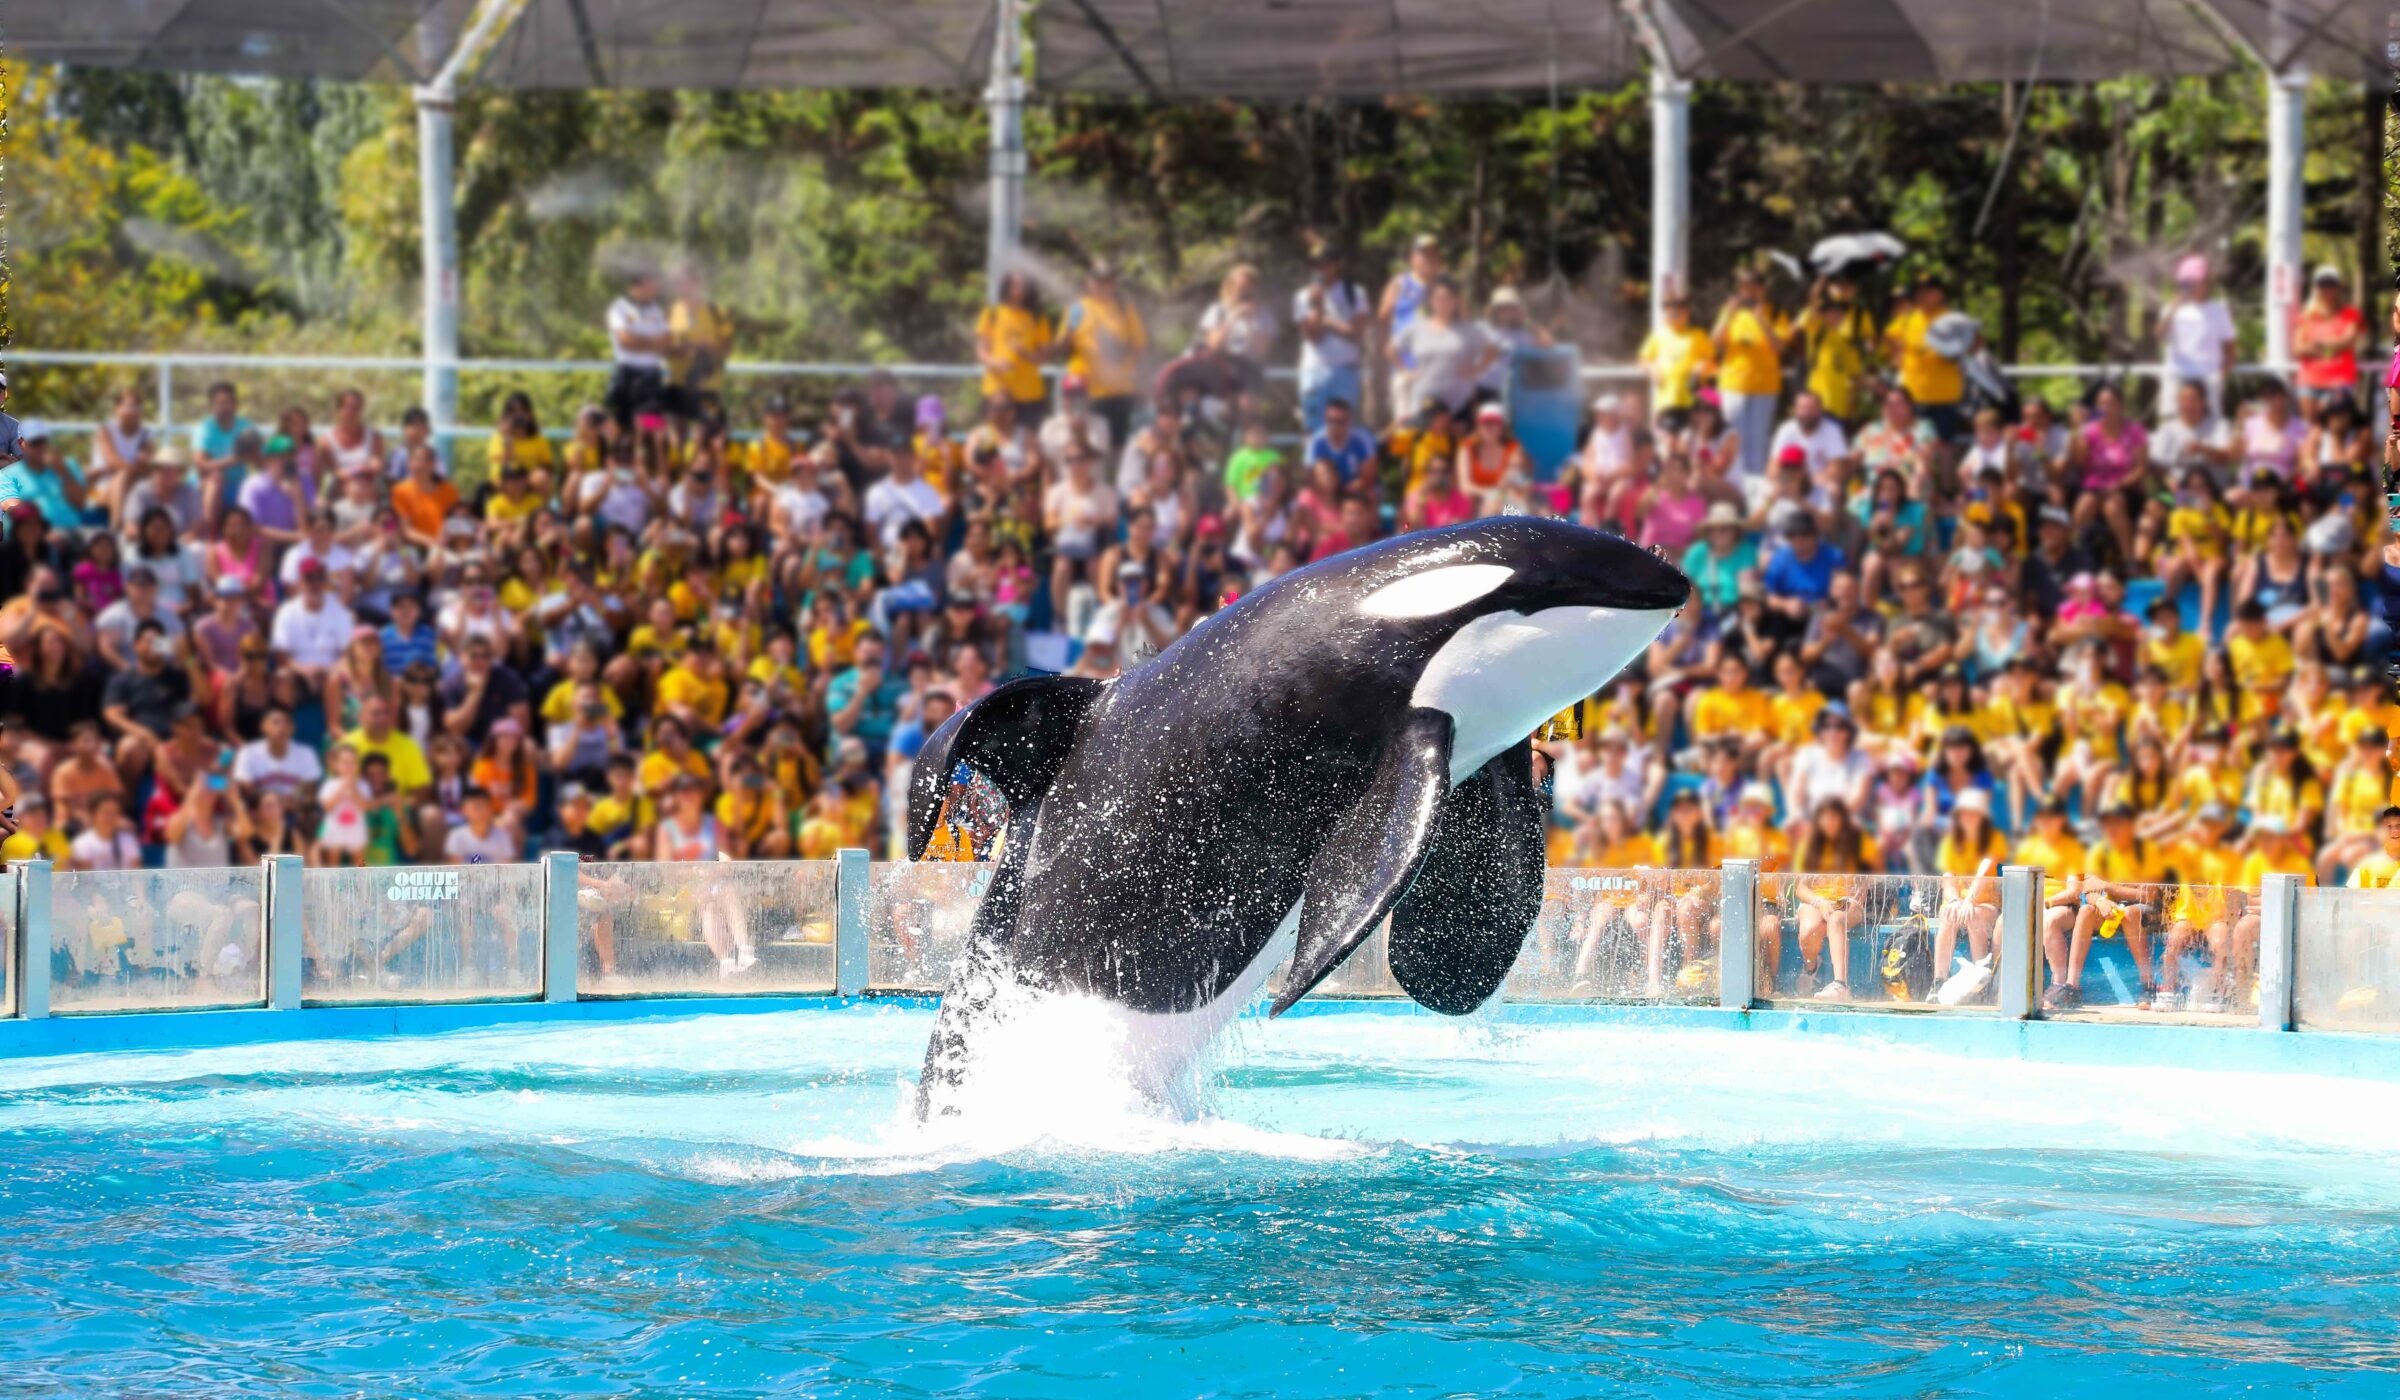 Prisionera de un circo acuático: la historia de encierro y reciente esperanza de Kshamenk, la única orca en cautiverio de Sudamérica